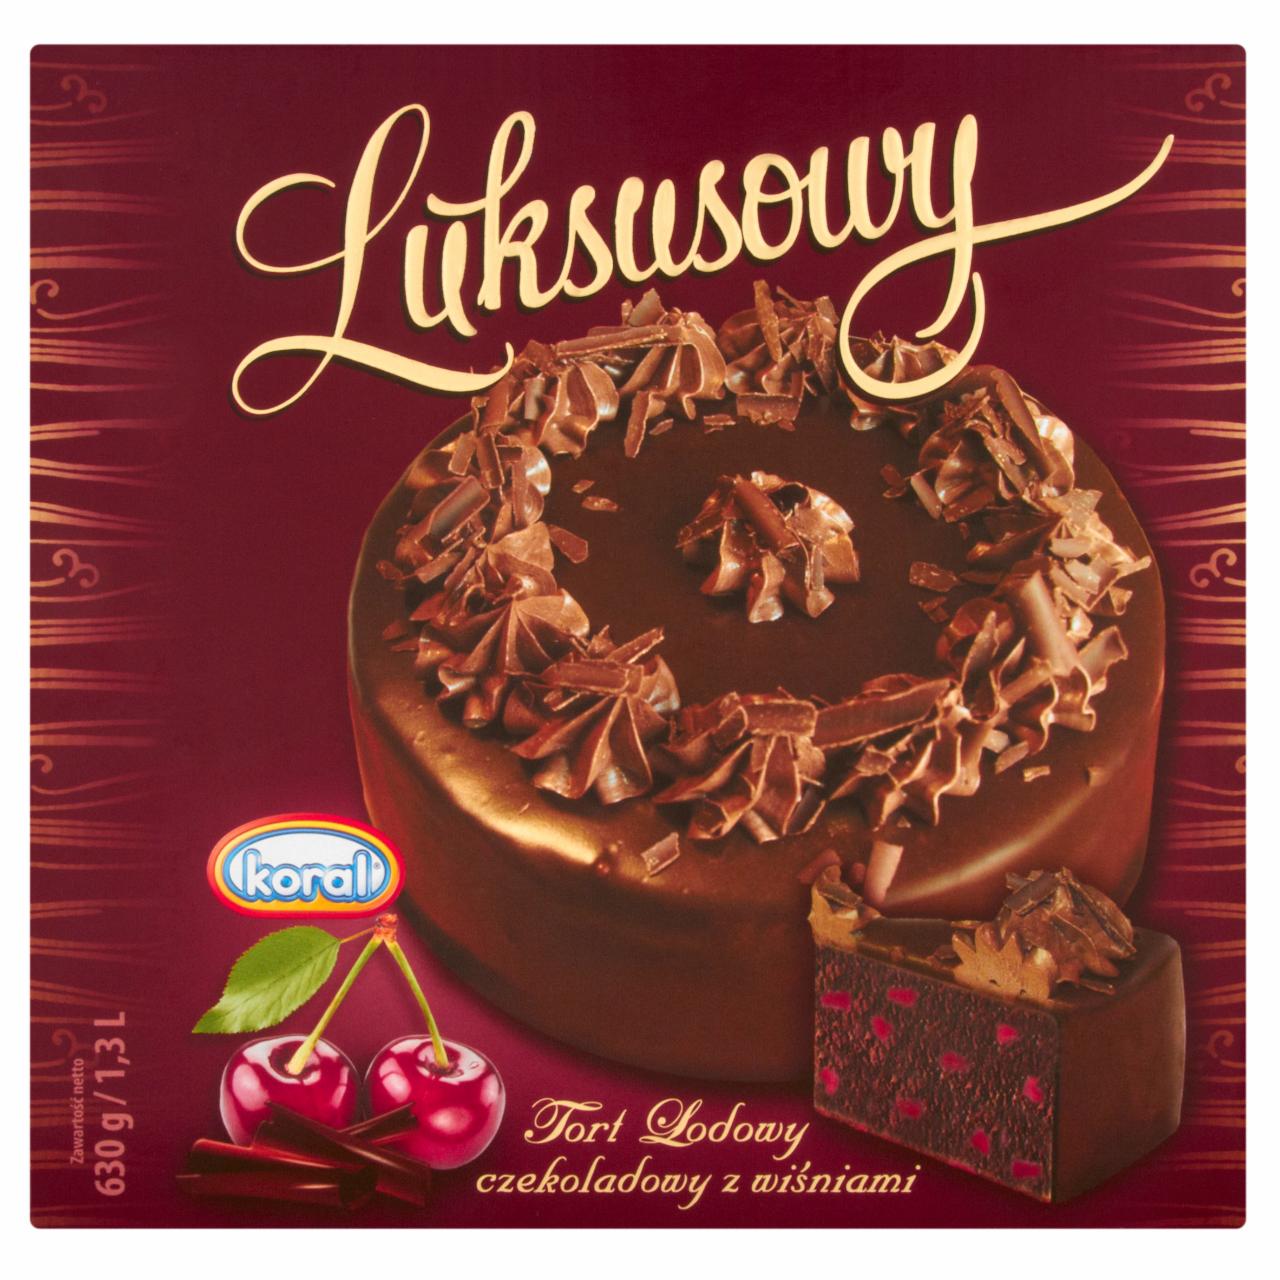 Zdjęcia - Koral Luksusowy Tort lodowy czekoladowy z wiśniami 1,3 l